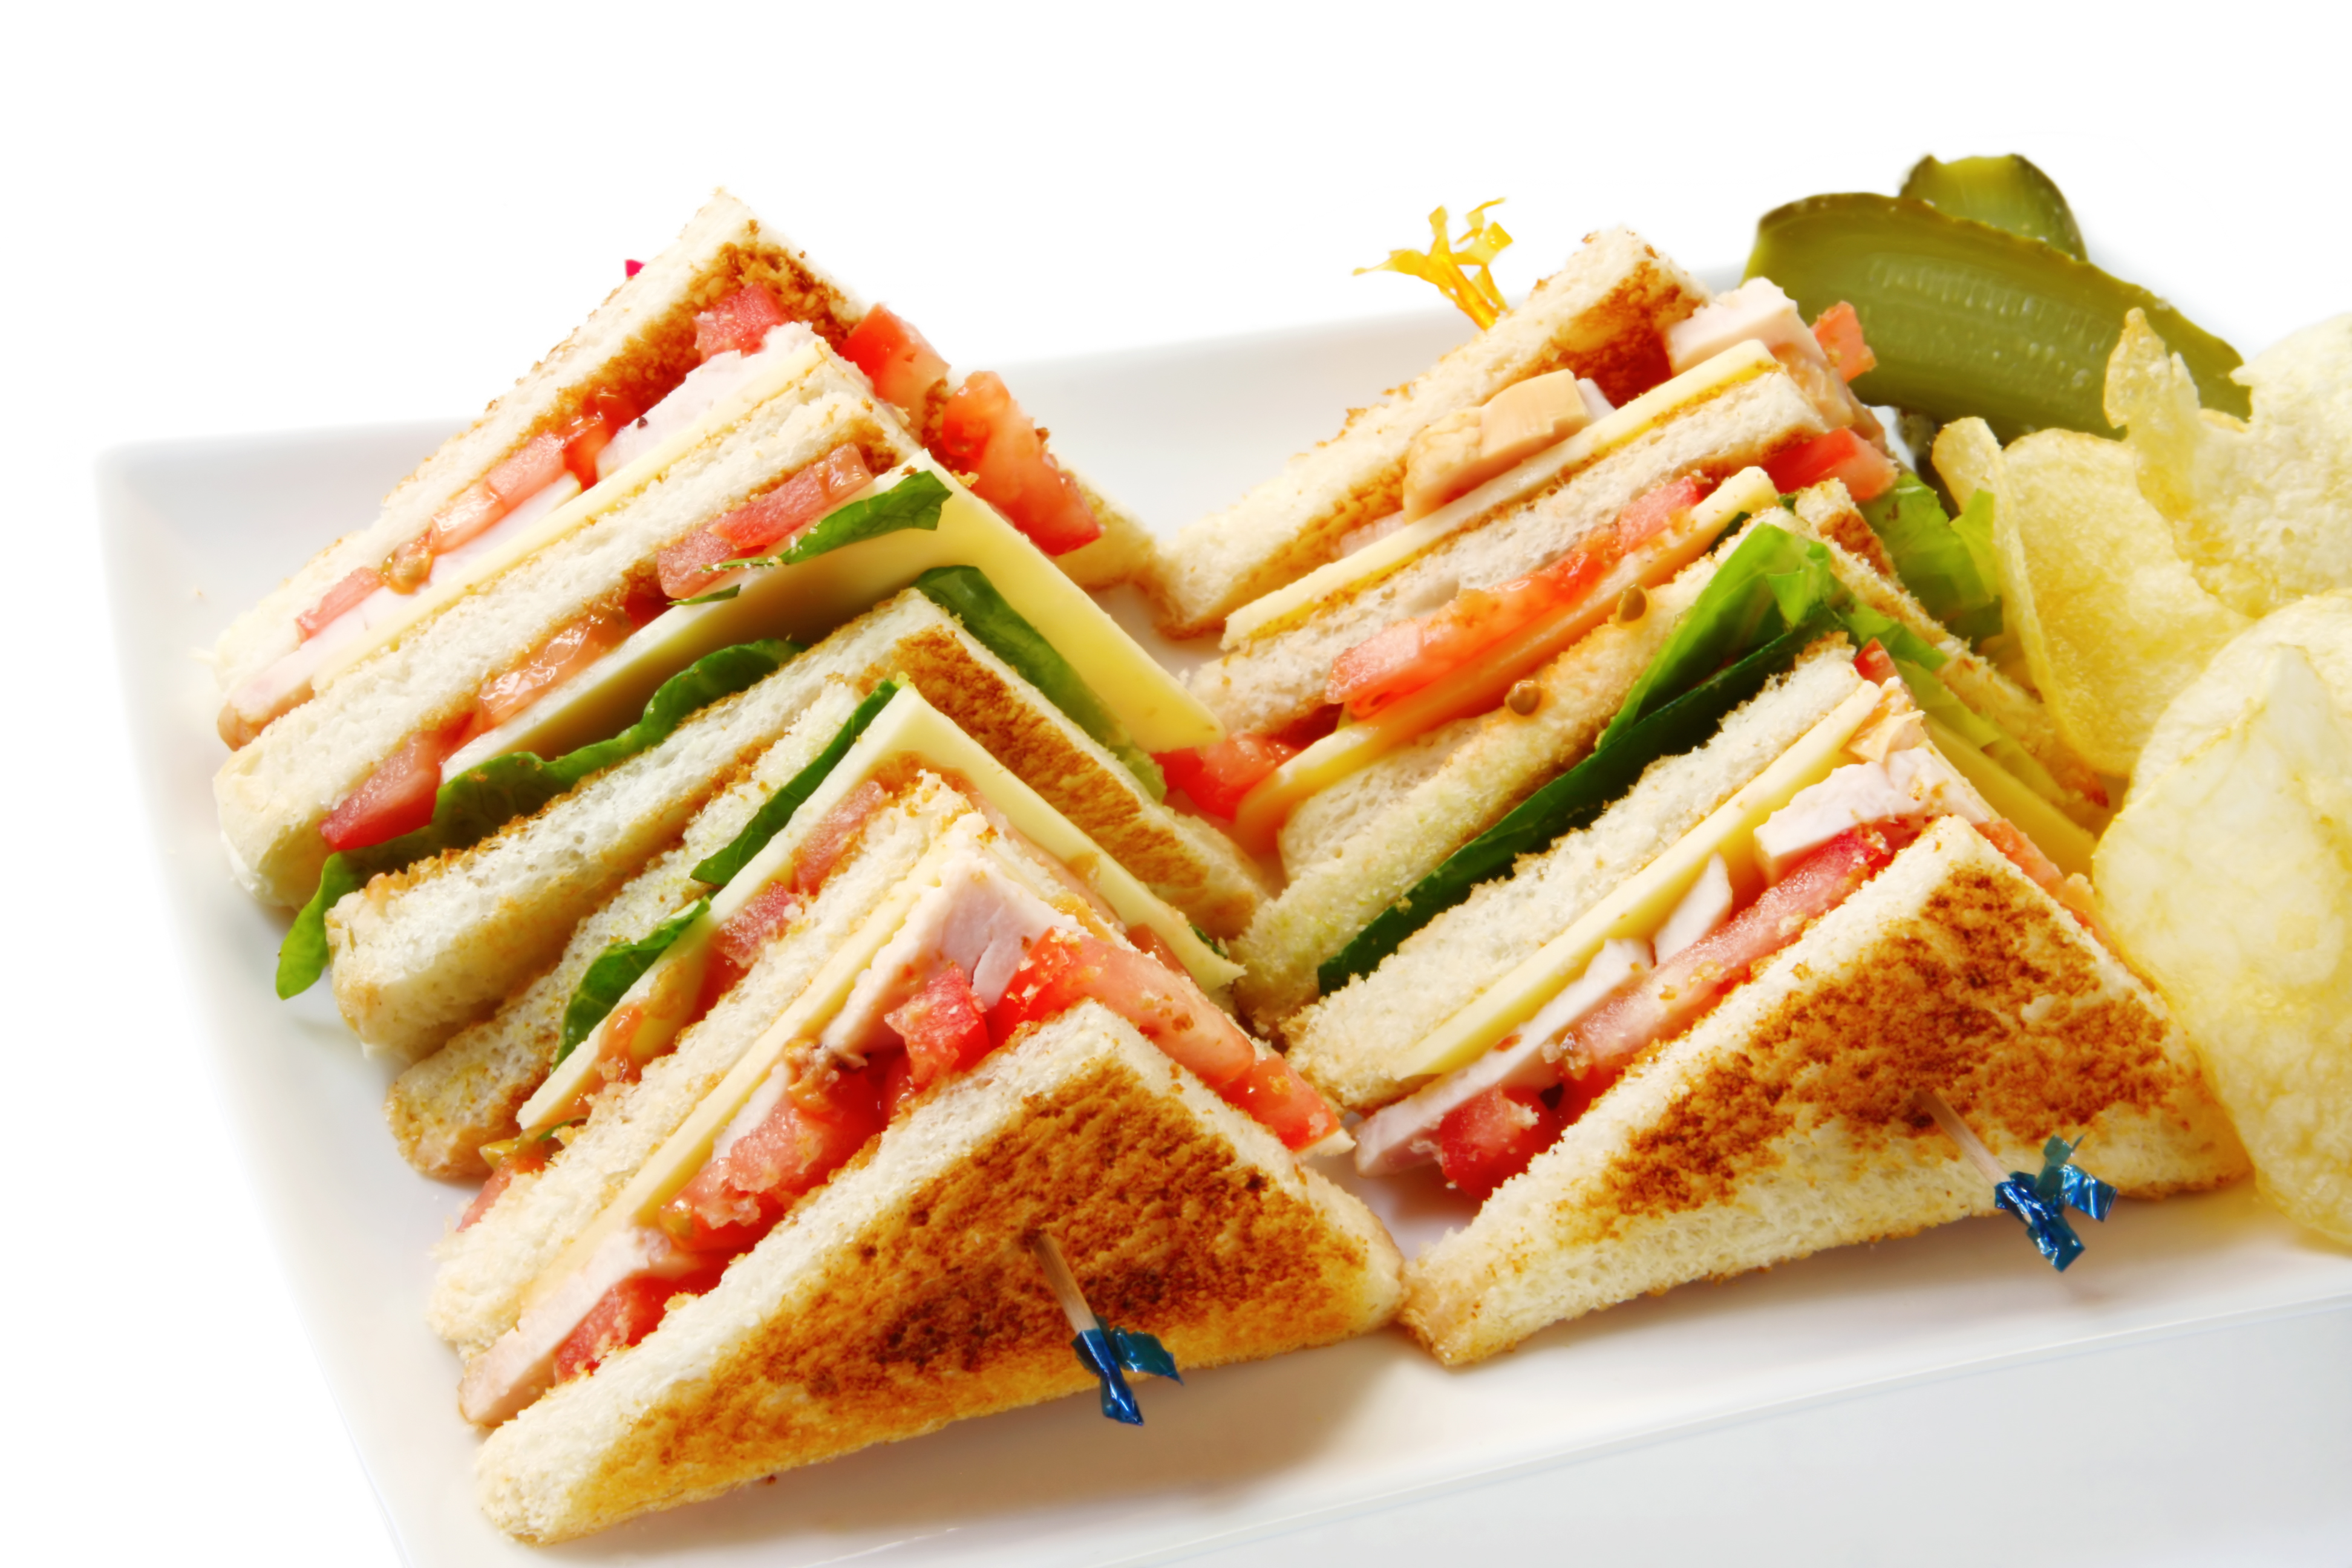 Club sandwich 3888x2592px.